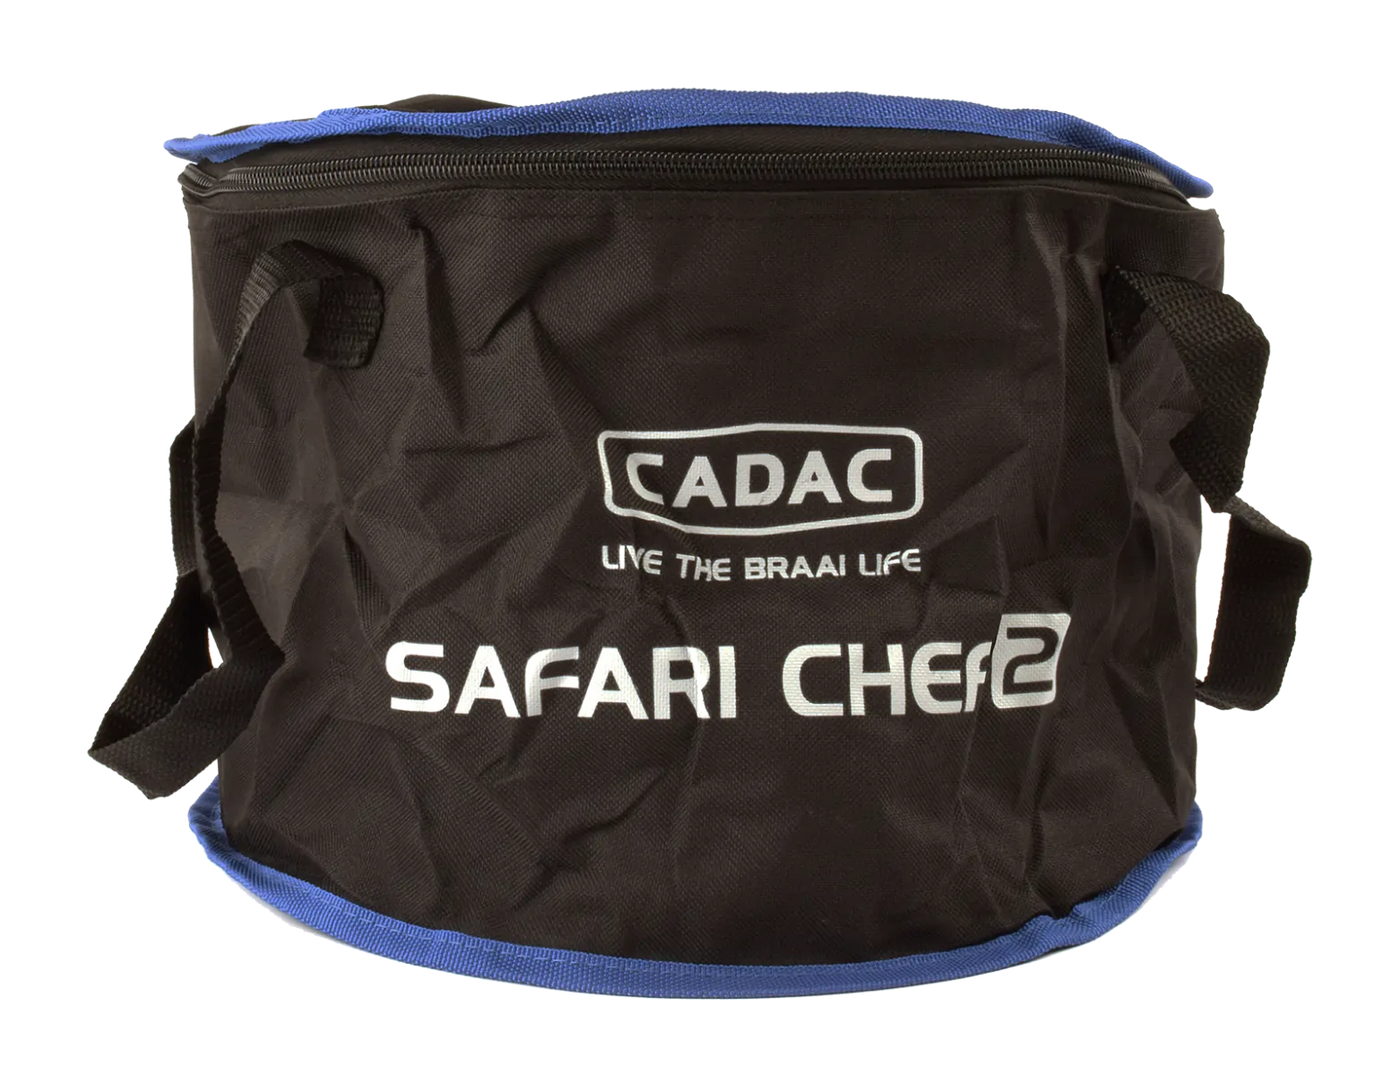 Cadac Safari Chef 30 LP, Kartuschengrill - verschiedene Ausführungen